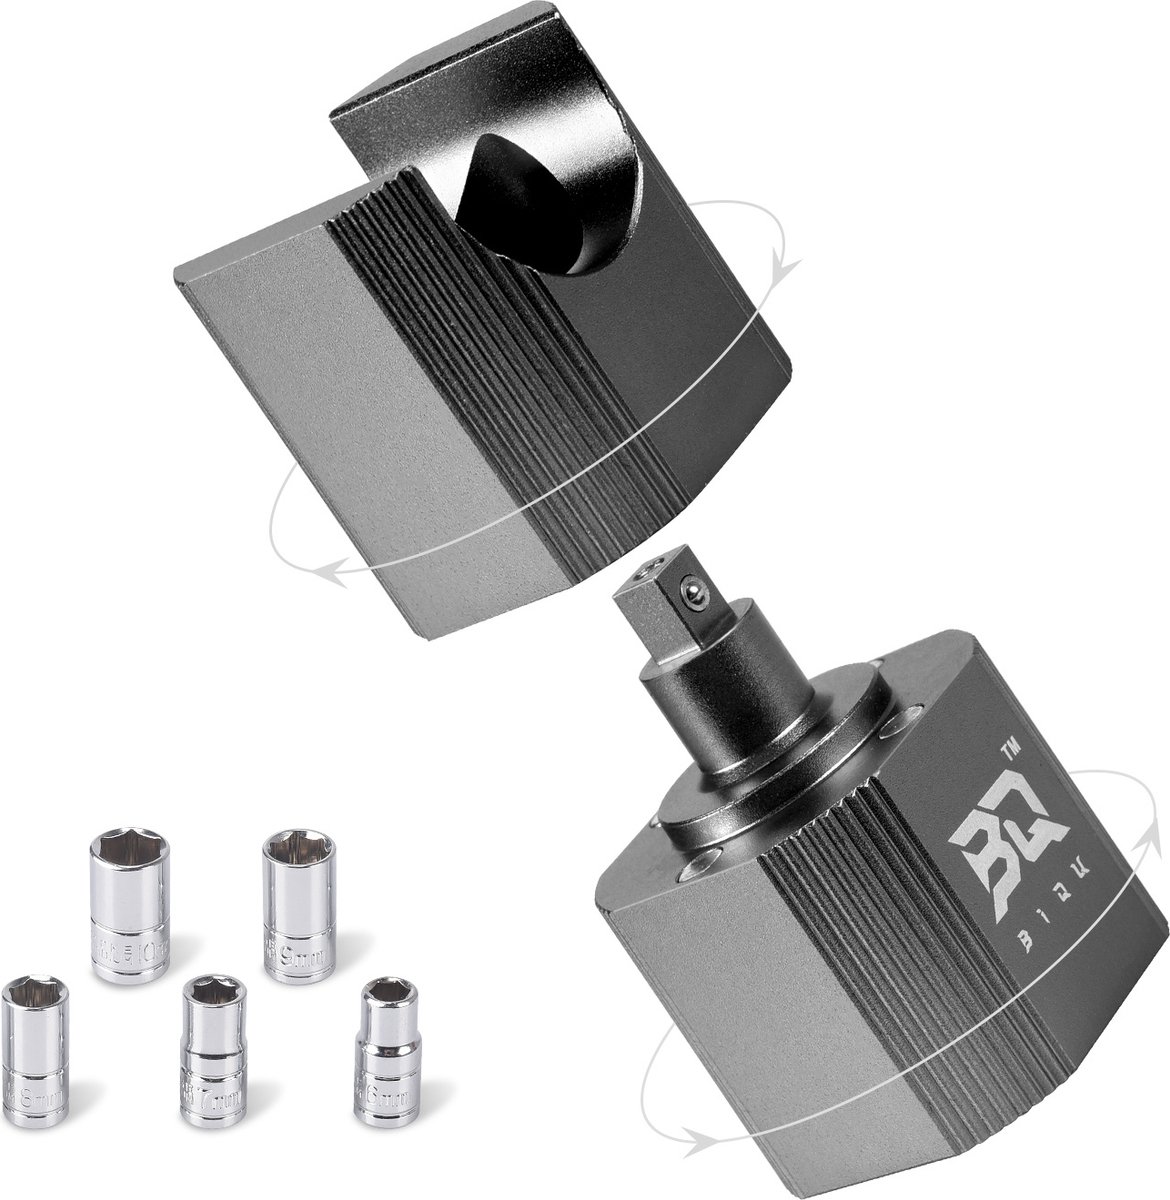 BIQU Nozzle vervanging tool 3D printer - Metaal - Handig & Snel - incl. sockets